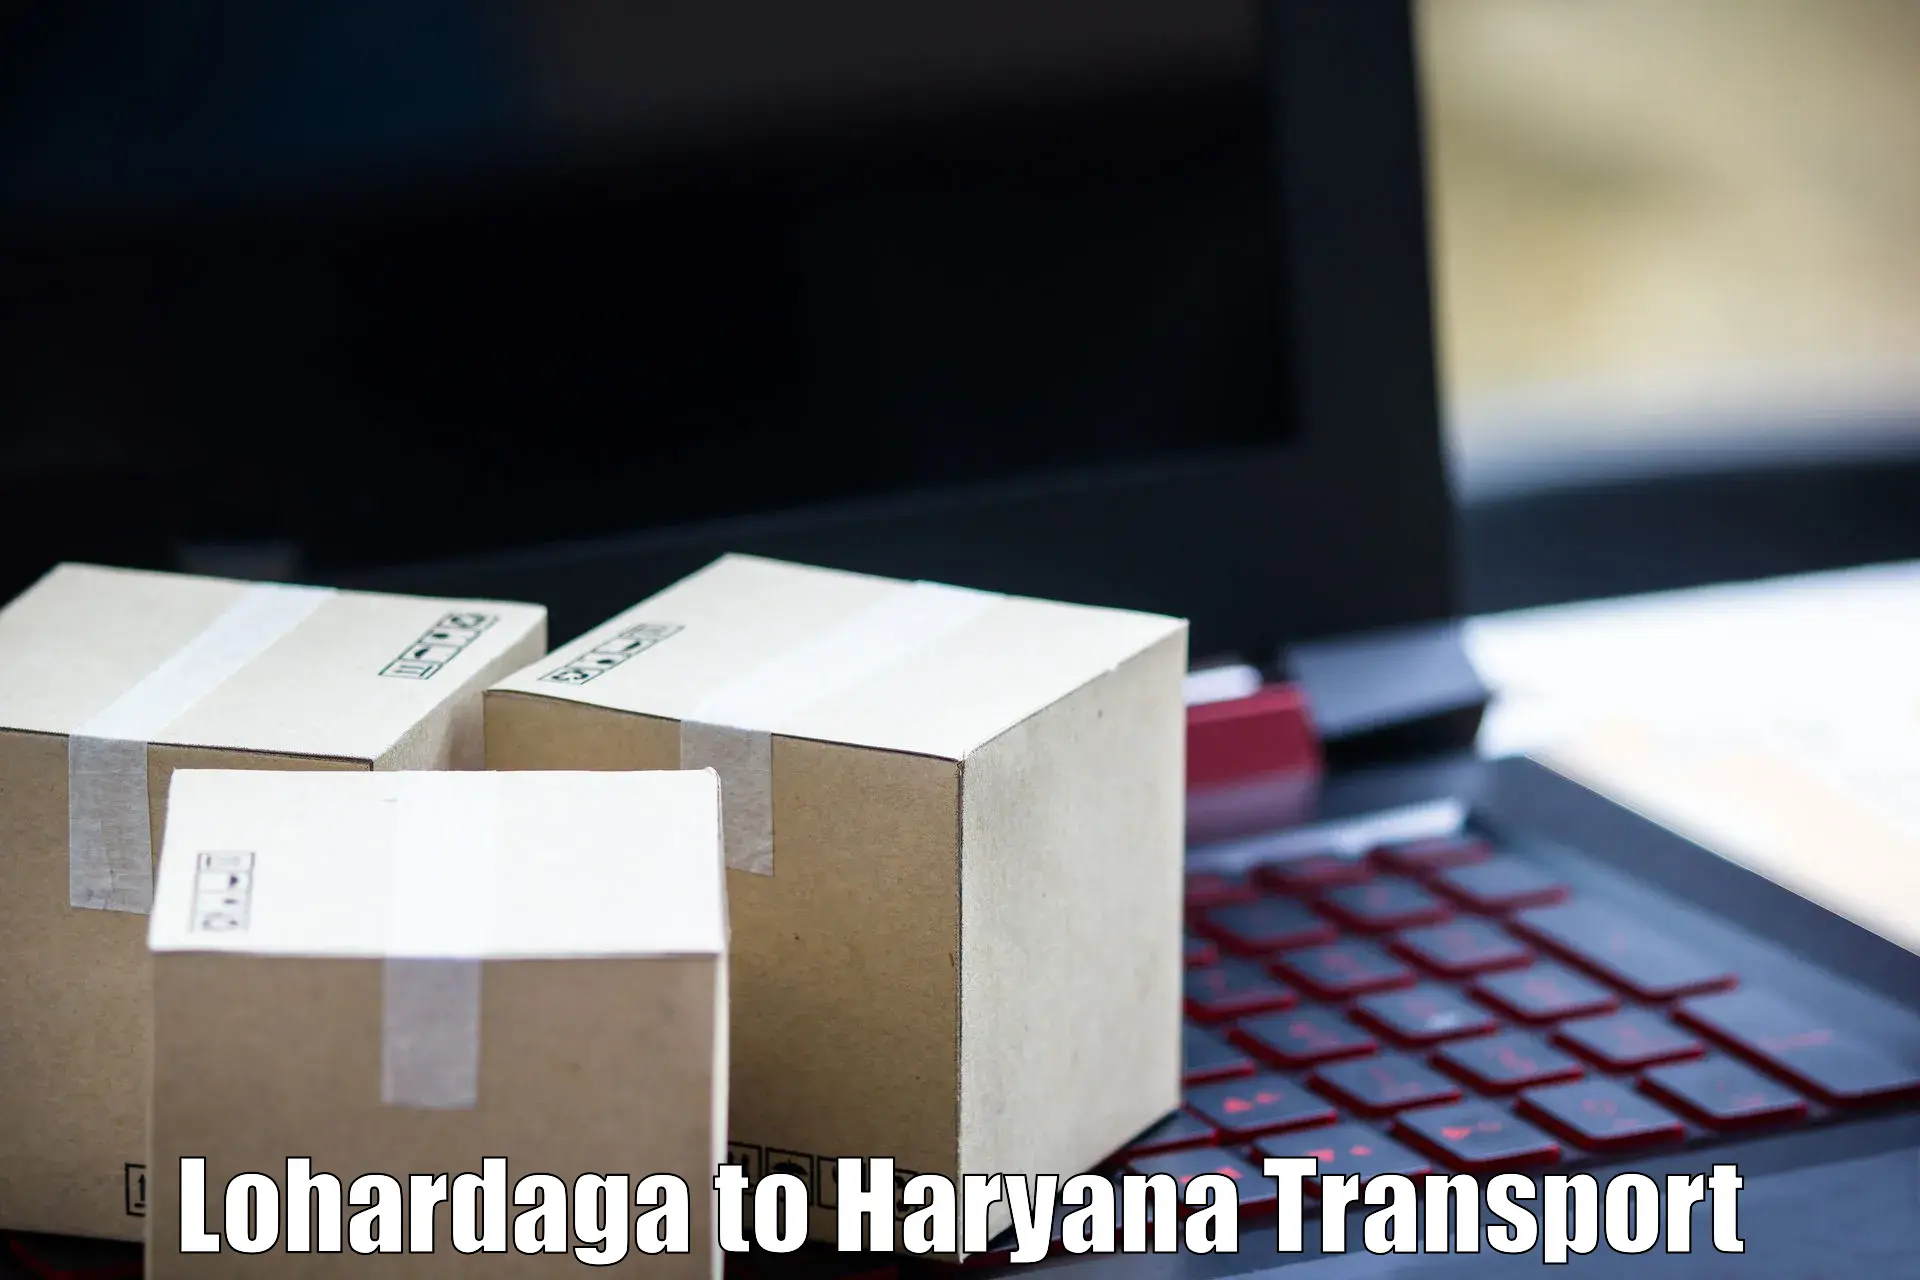 Furniture transport service Lohardaga to NCR Haryana